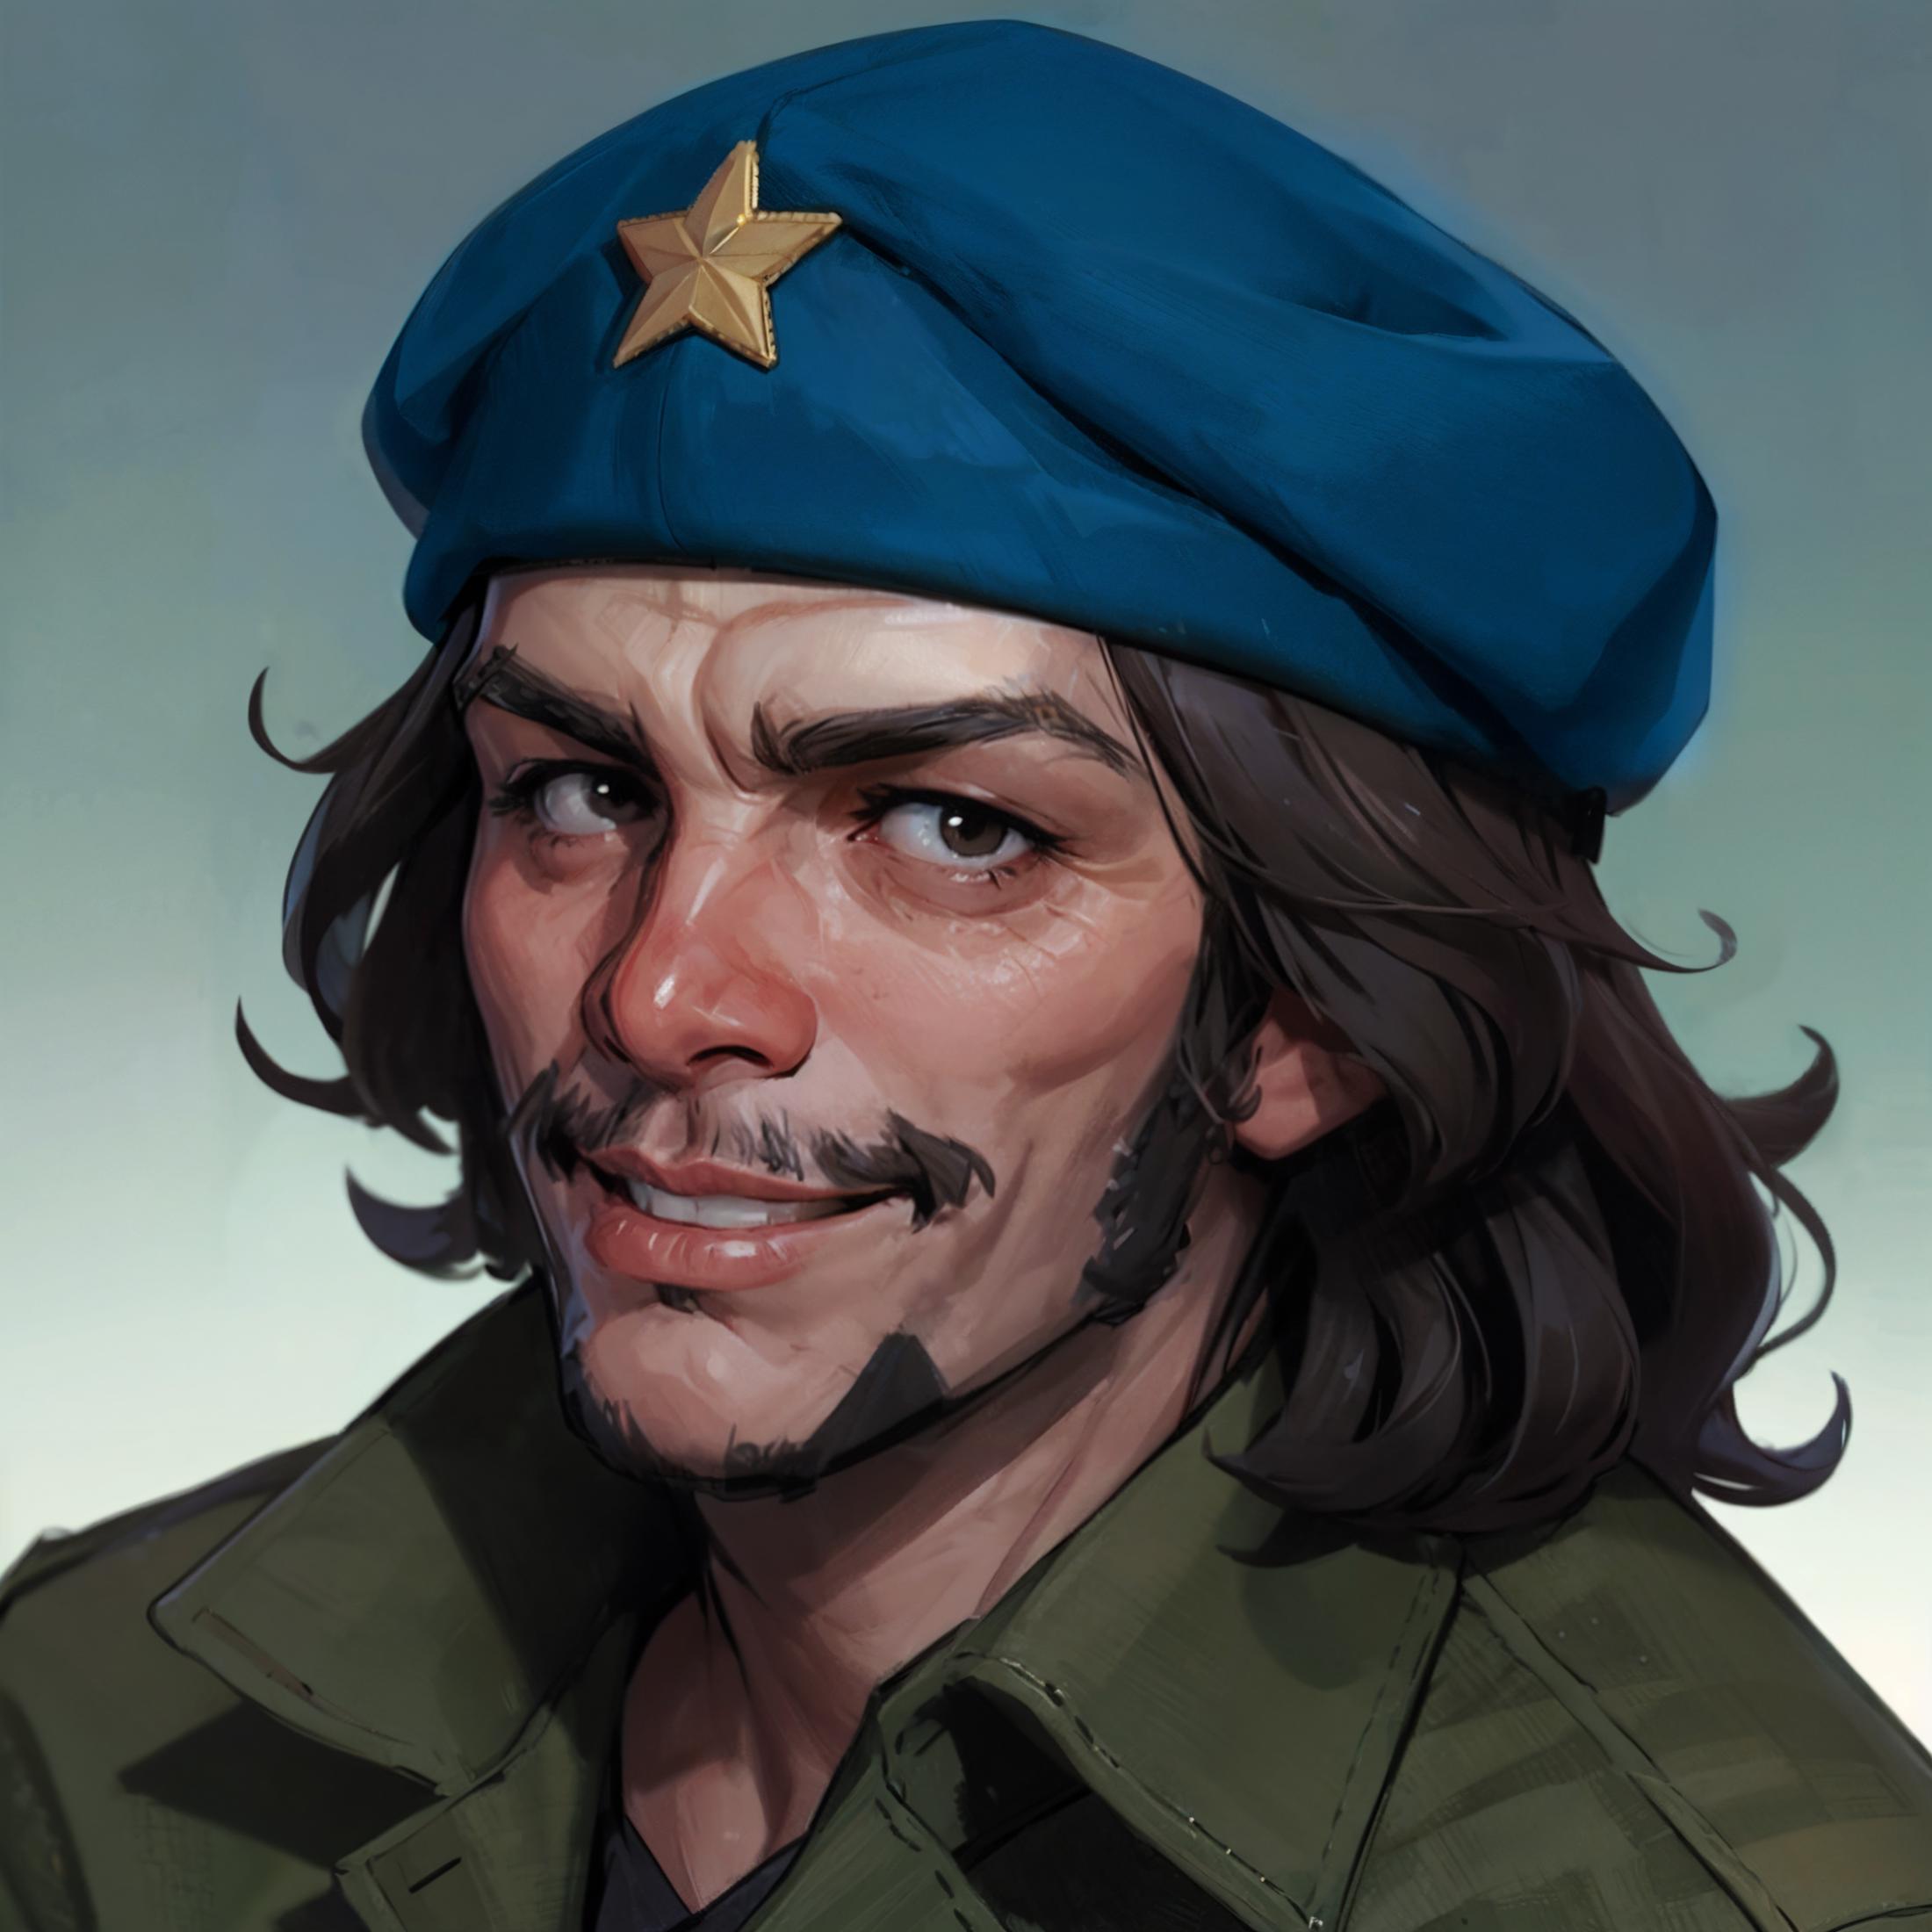 Che Guevara - Ernesto Guevara de la Serna image by anothercivitaiaccount